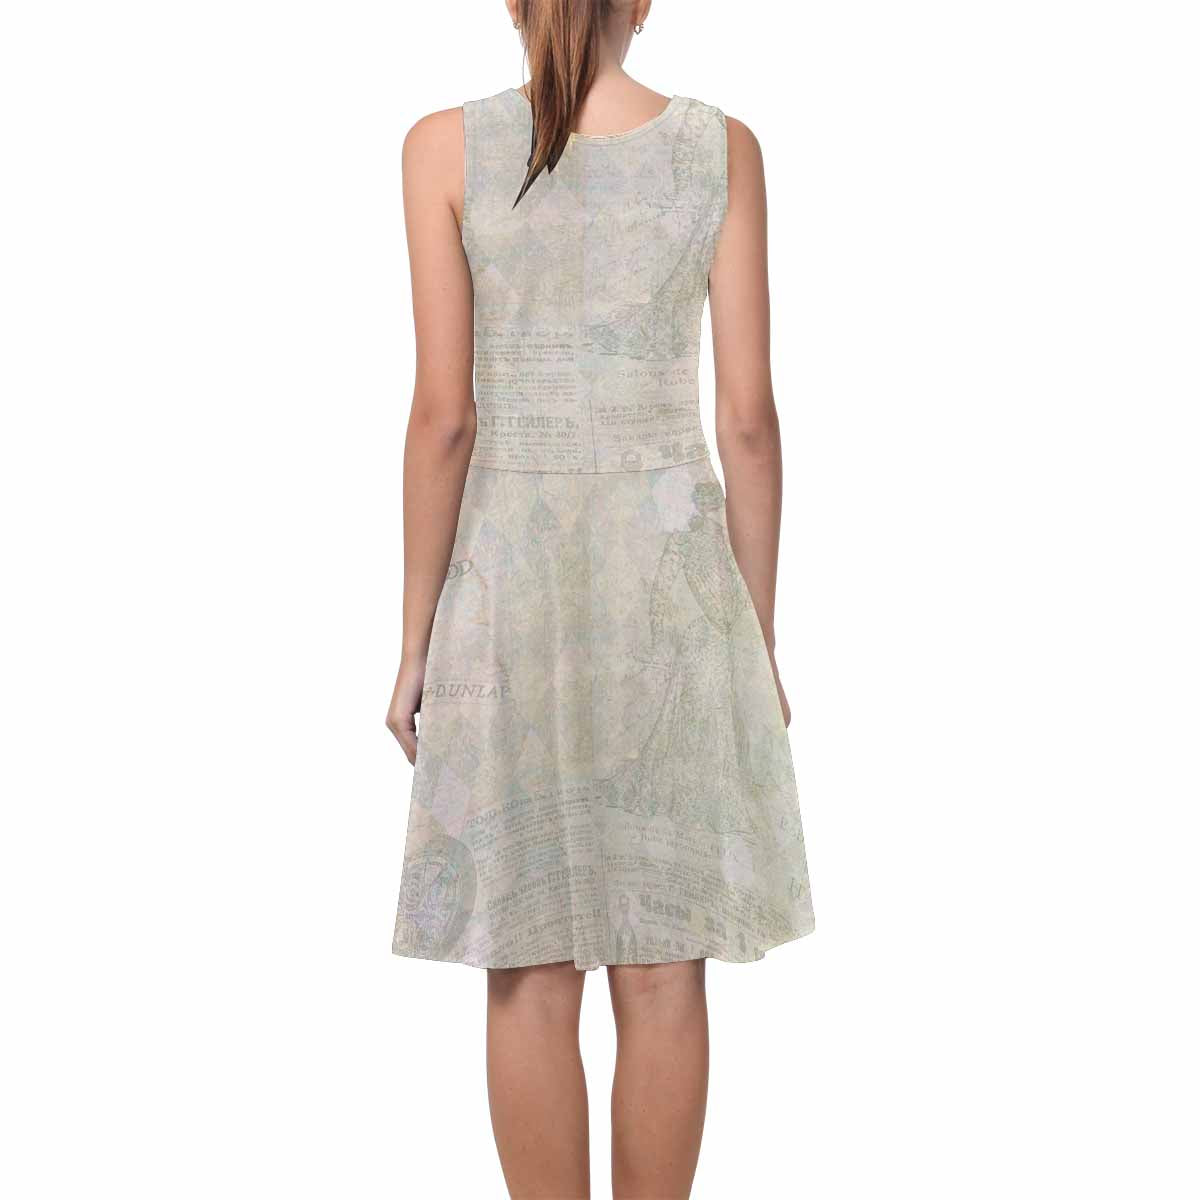 Antique General summer dress, MODEL 09534, design 27